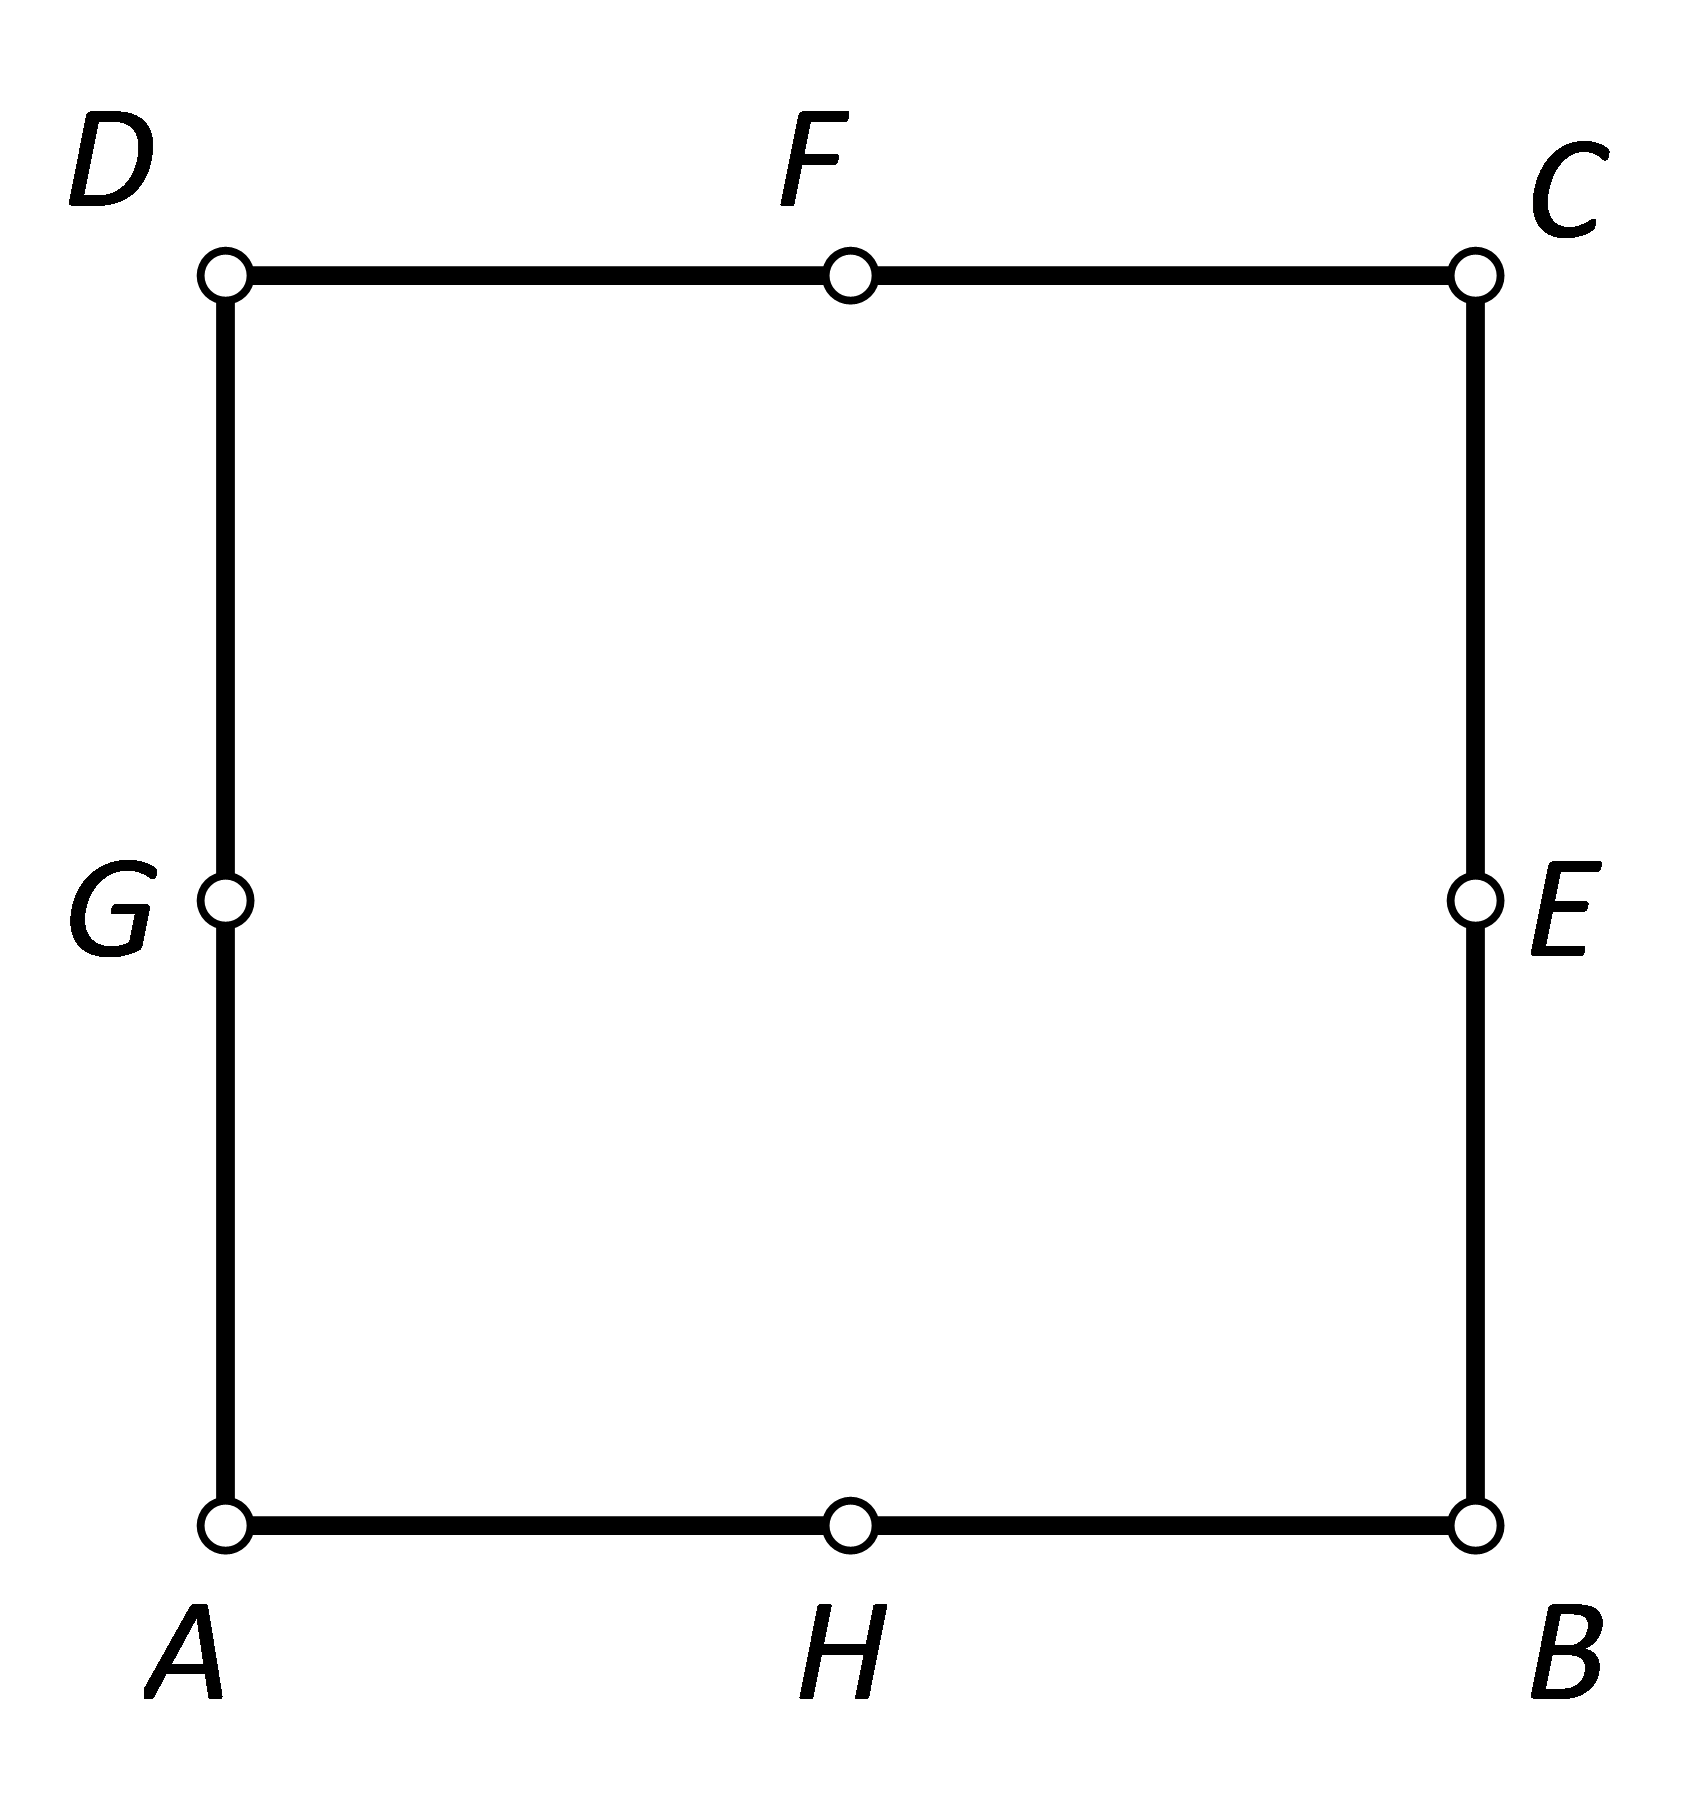 Na slici ke kvadrat ABCD i polovišta stranica redom počevši od stranice AB: H, E, F, G.